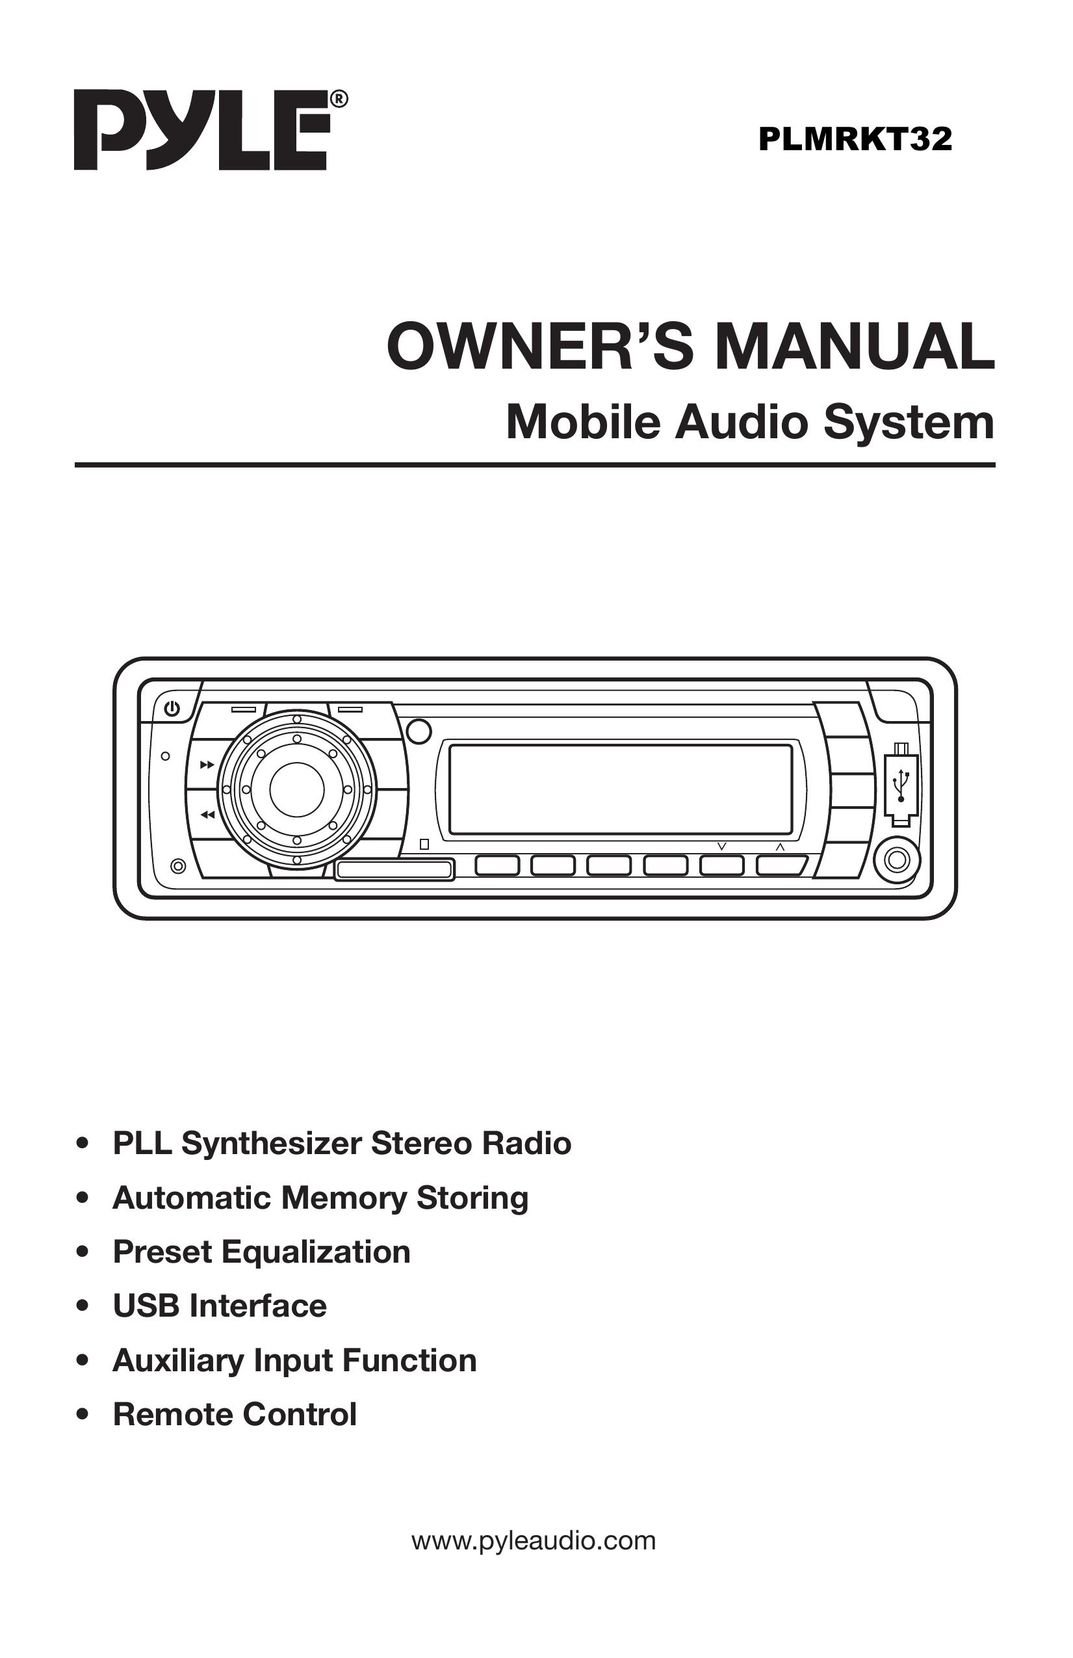 PYLE Audio PLMRKT32 Car Satellite Radio System User Manual